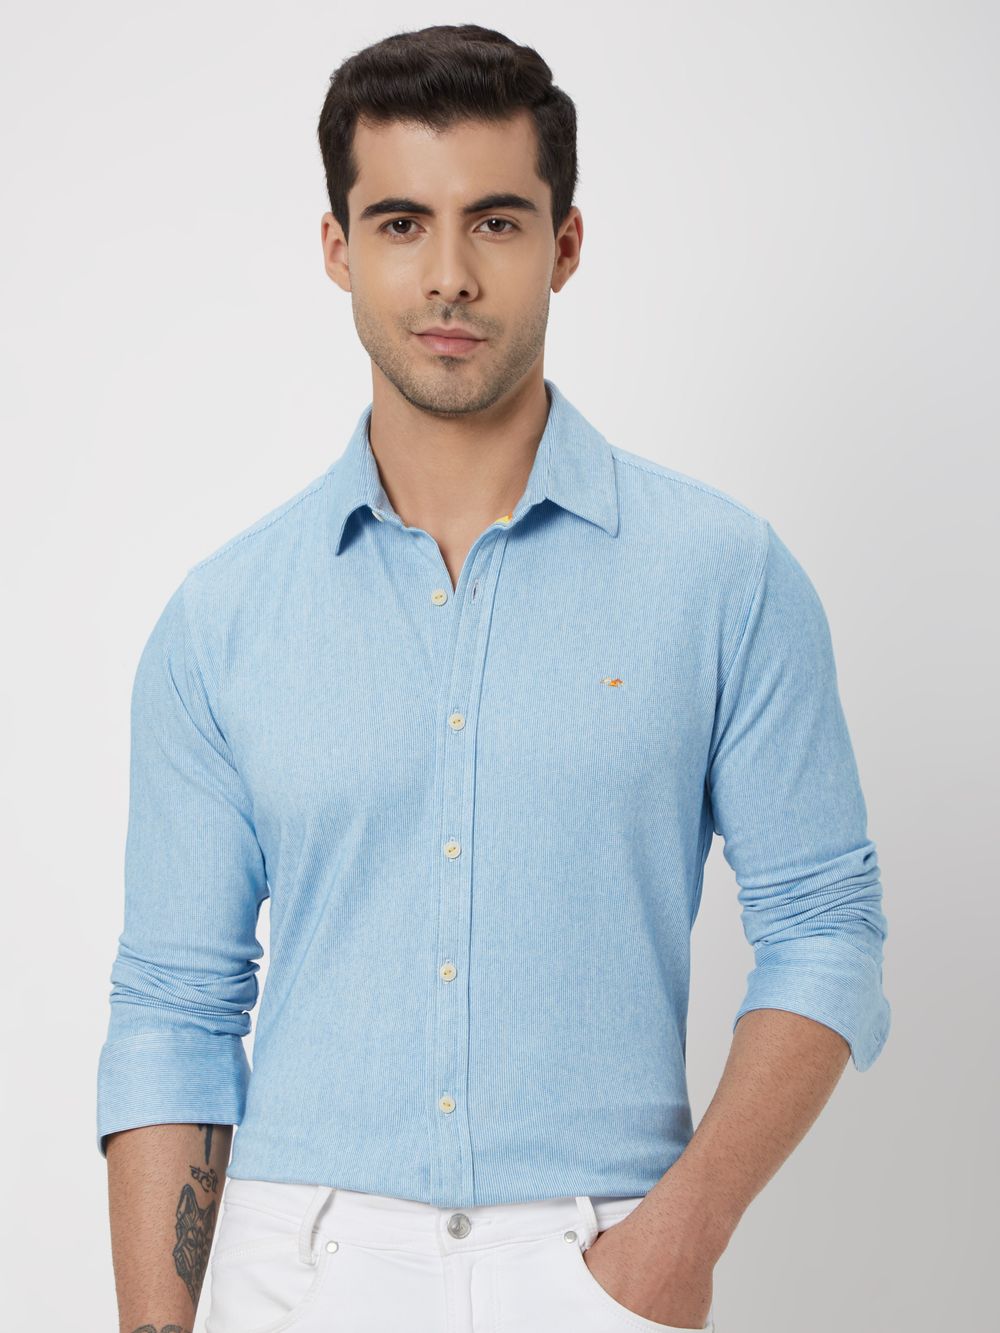 Blue & White Pin Stripe Shirt